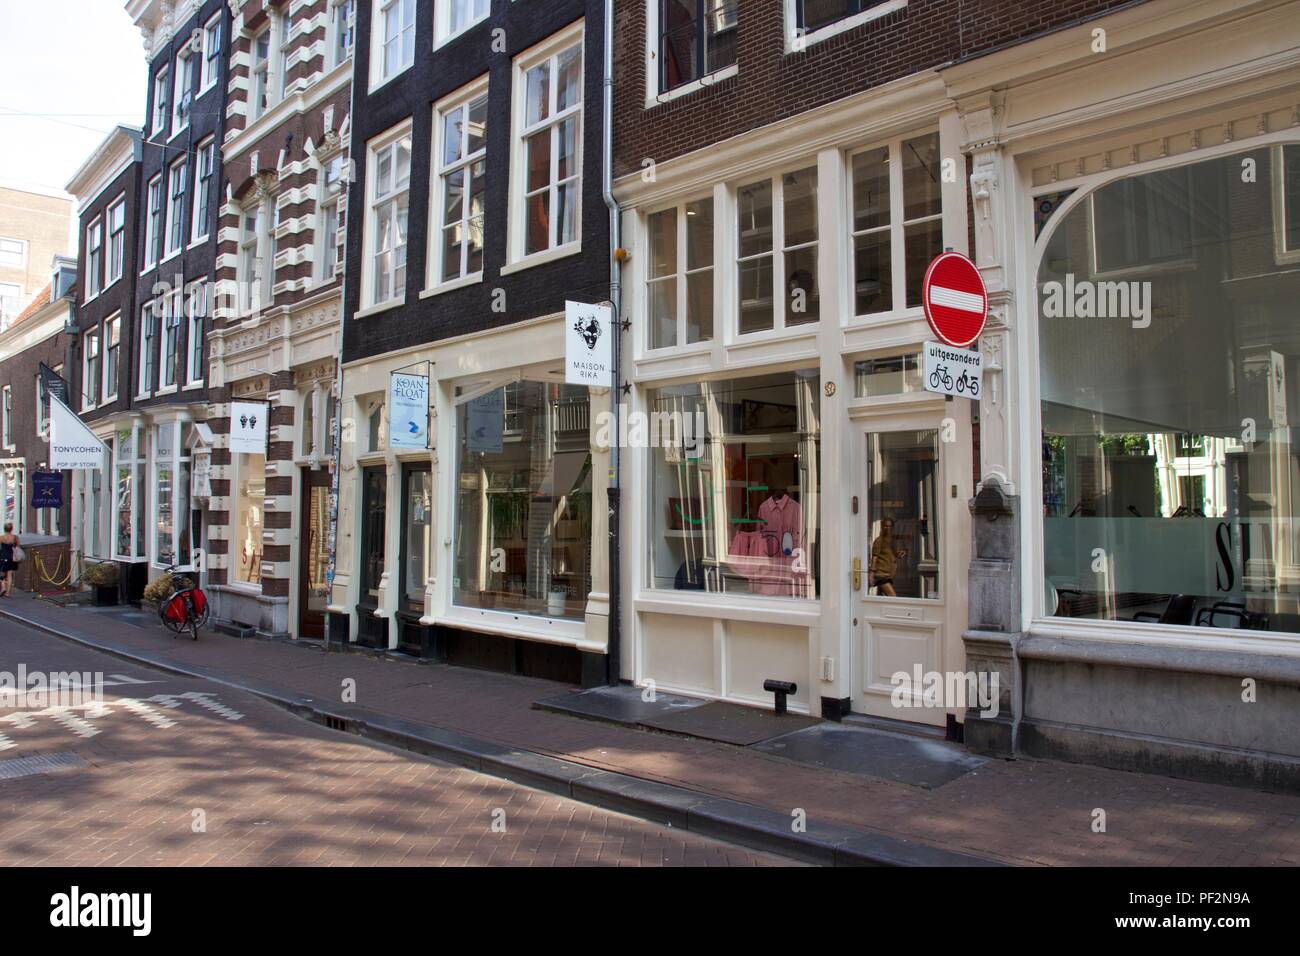 Die Geschäfte in der Oude Spiegelstraat, ein Teil von De 9 straatjes in Amsterdam, Niederlande Stockfoto